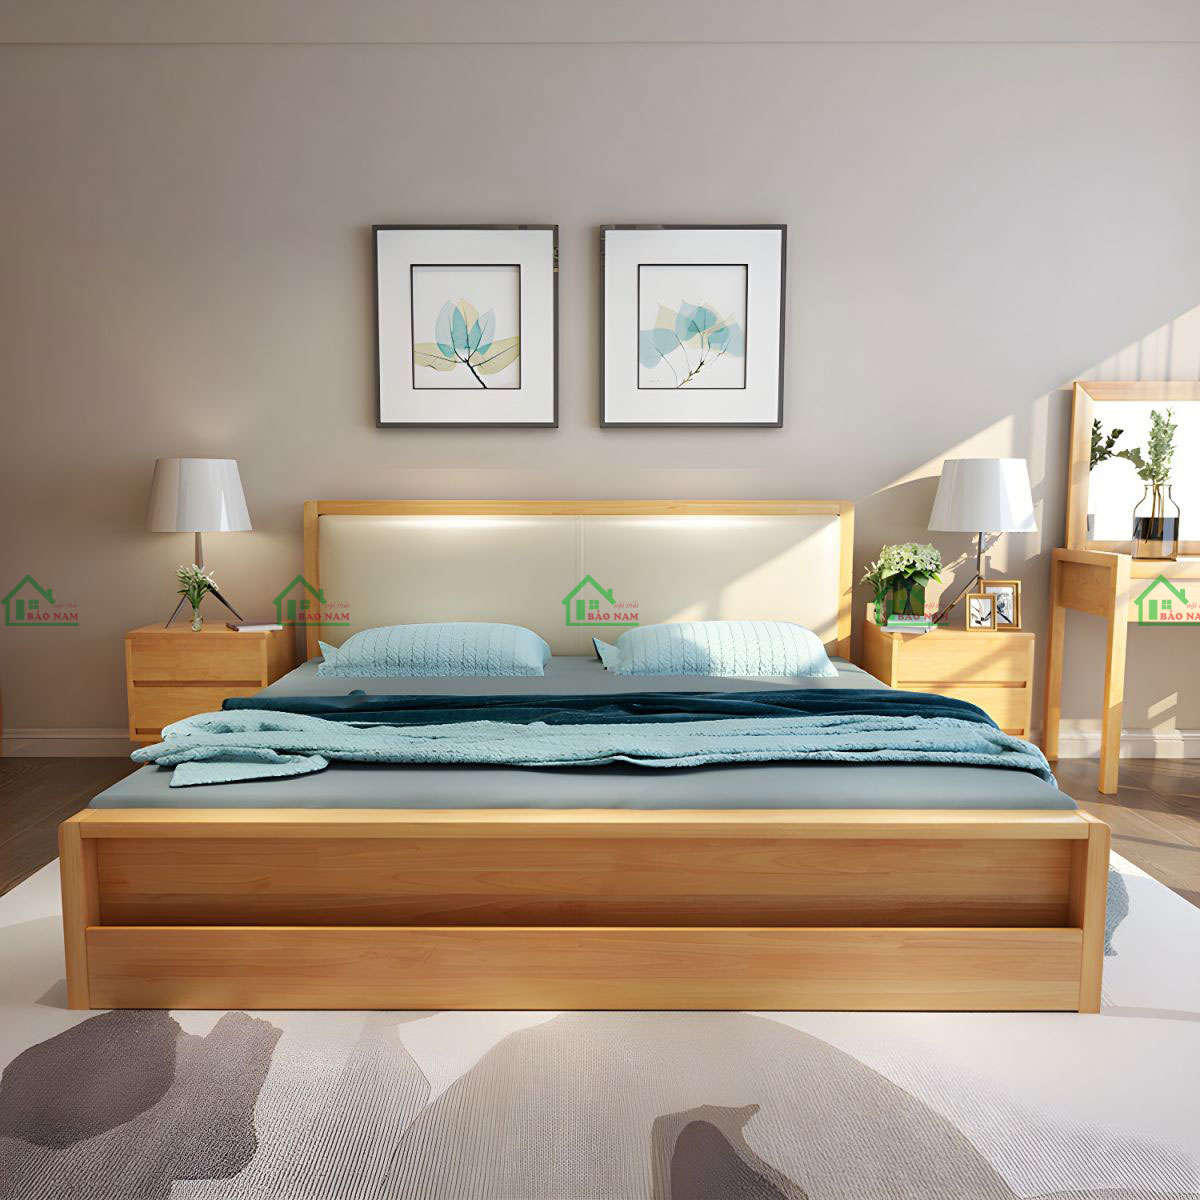 Giường ngủ gỗ tự nhiên chất lượng cao